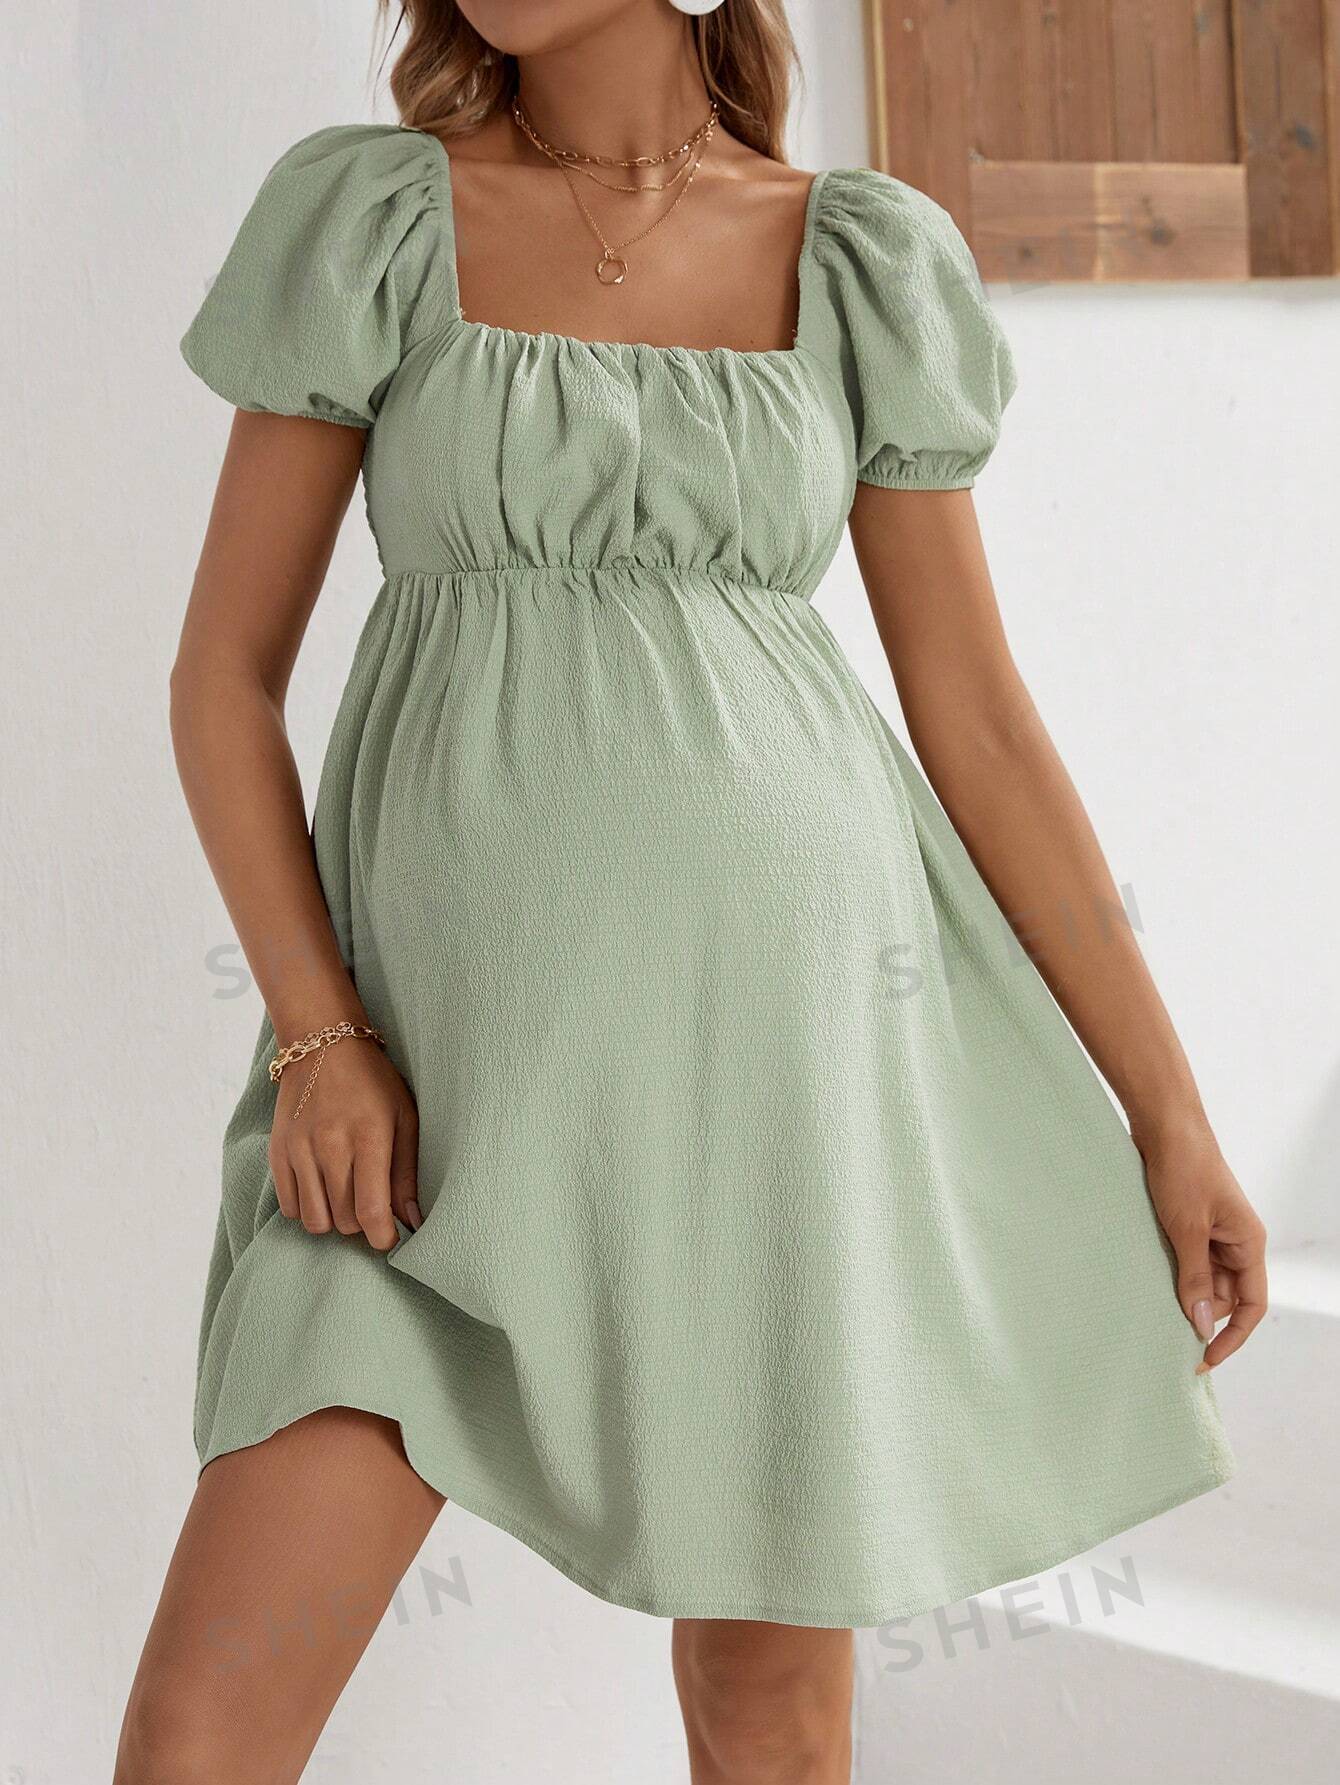 SHEIN Элегантное облегающее платье с квадратным вырезом и короткими рукавами для беременных для работы, зеленый женское облегающее платье eoenkky элегантное платье с квадратным вырезом коротким рукавом высокой талией и разрезом оптовая продажа